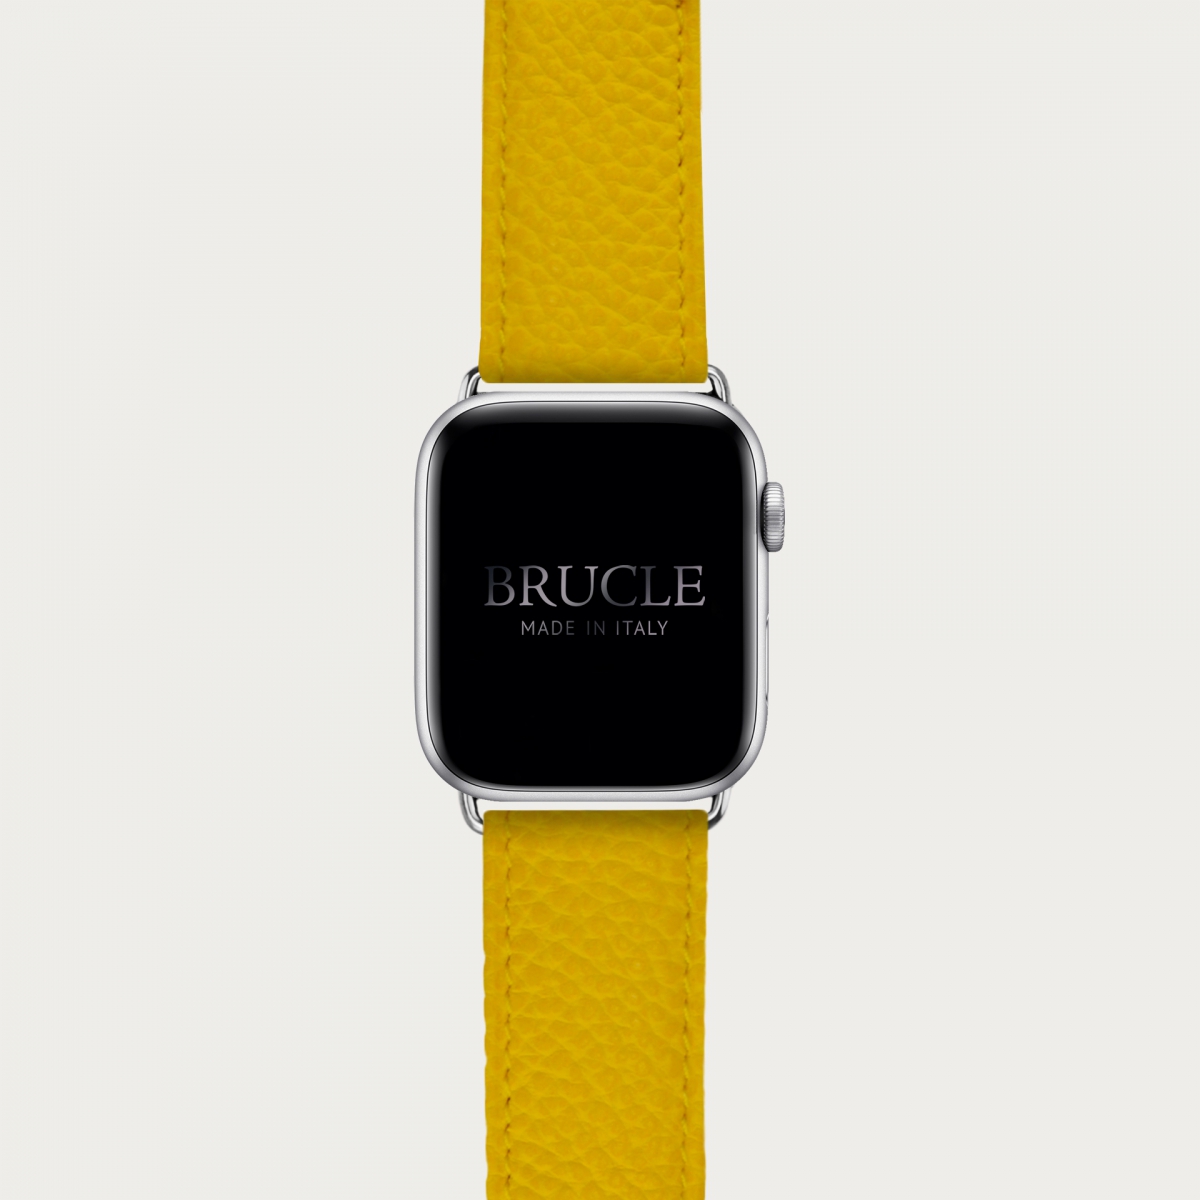 Correa de reloj compatible con Apple Watch / Samsung smartwatch, estampado amarillo